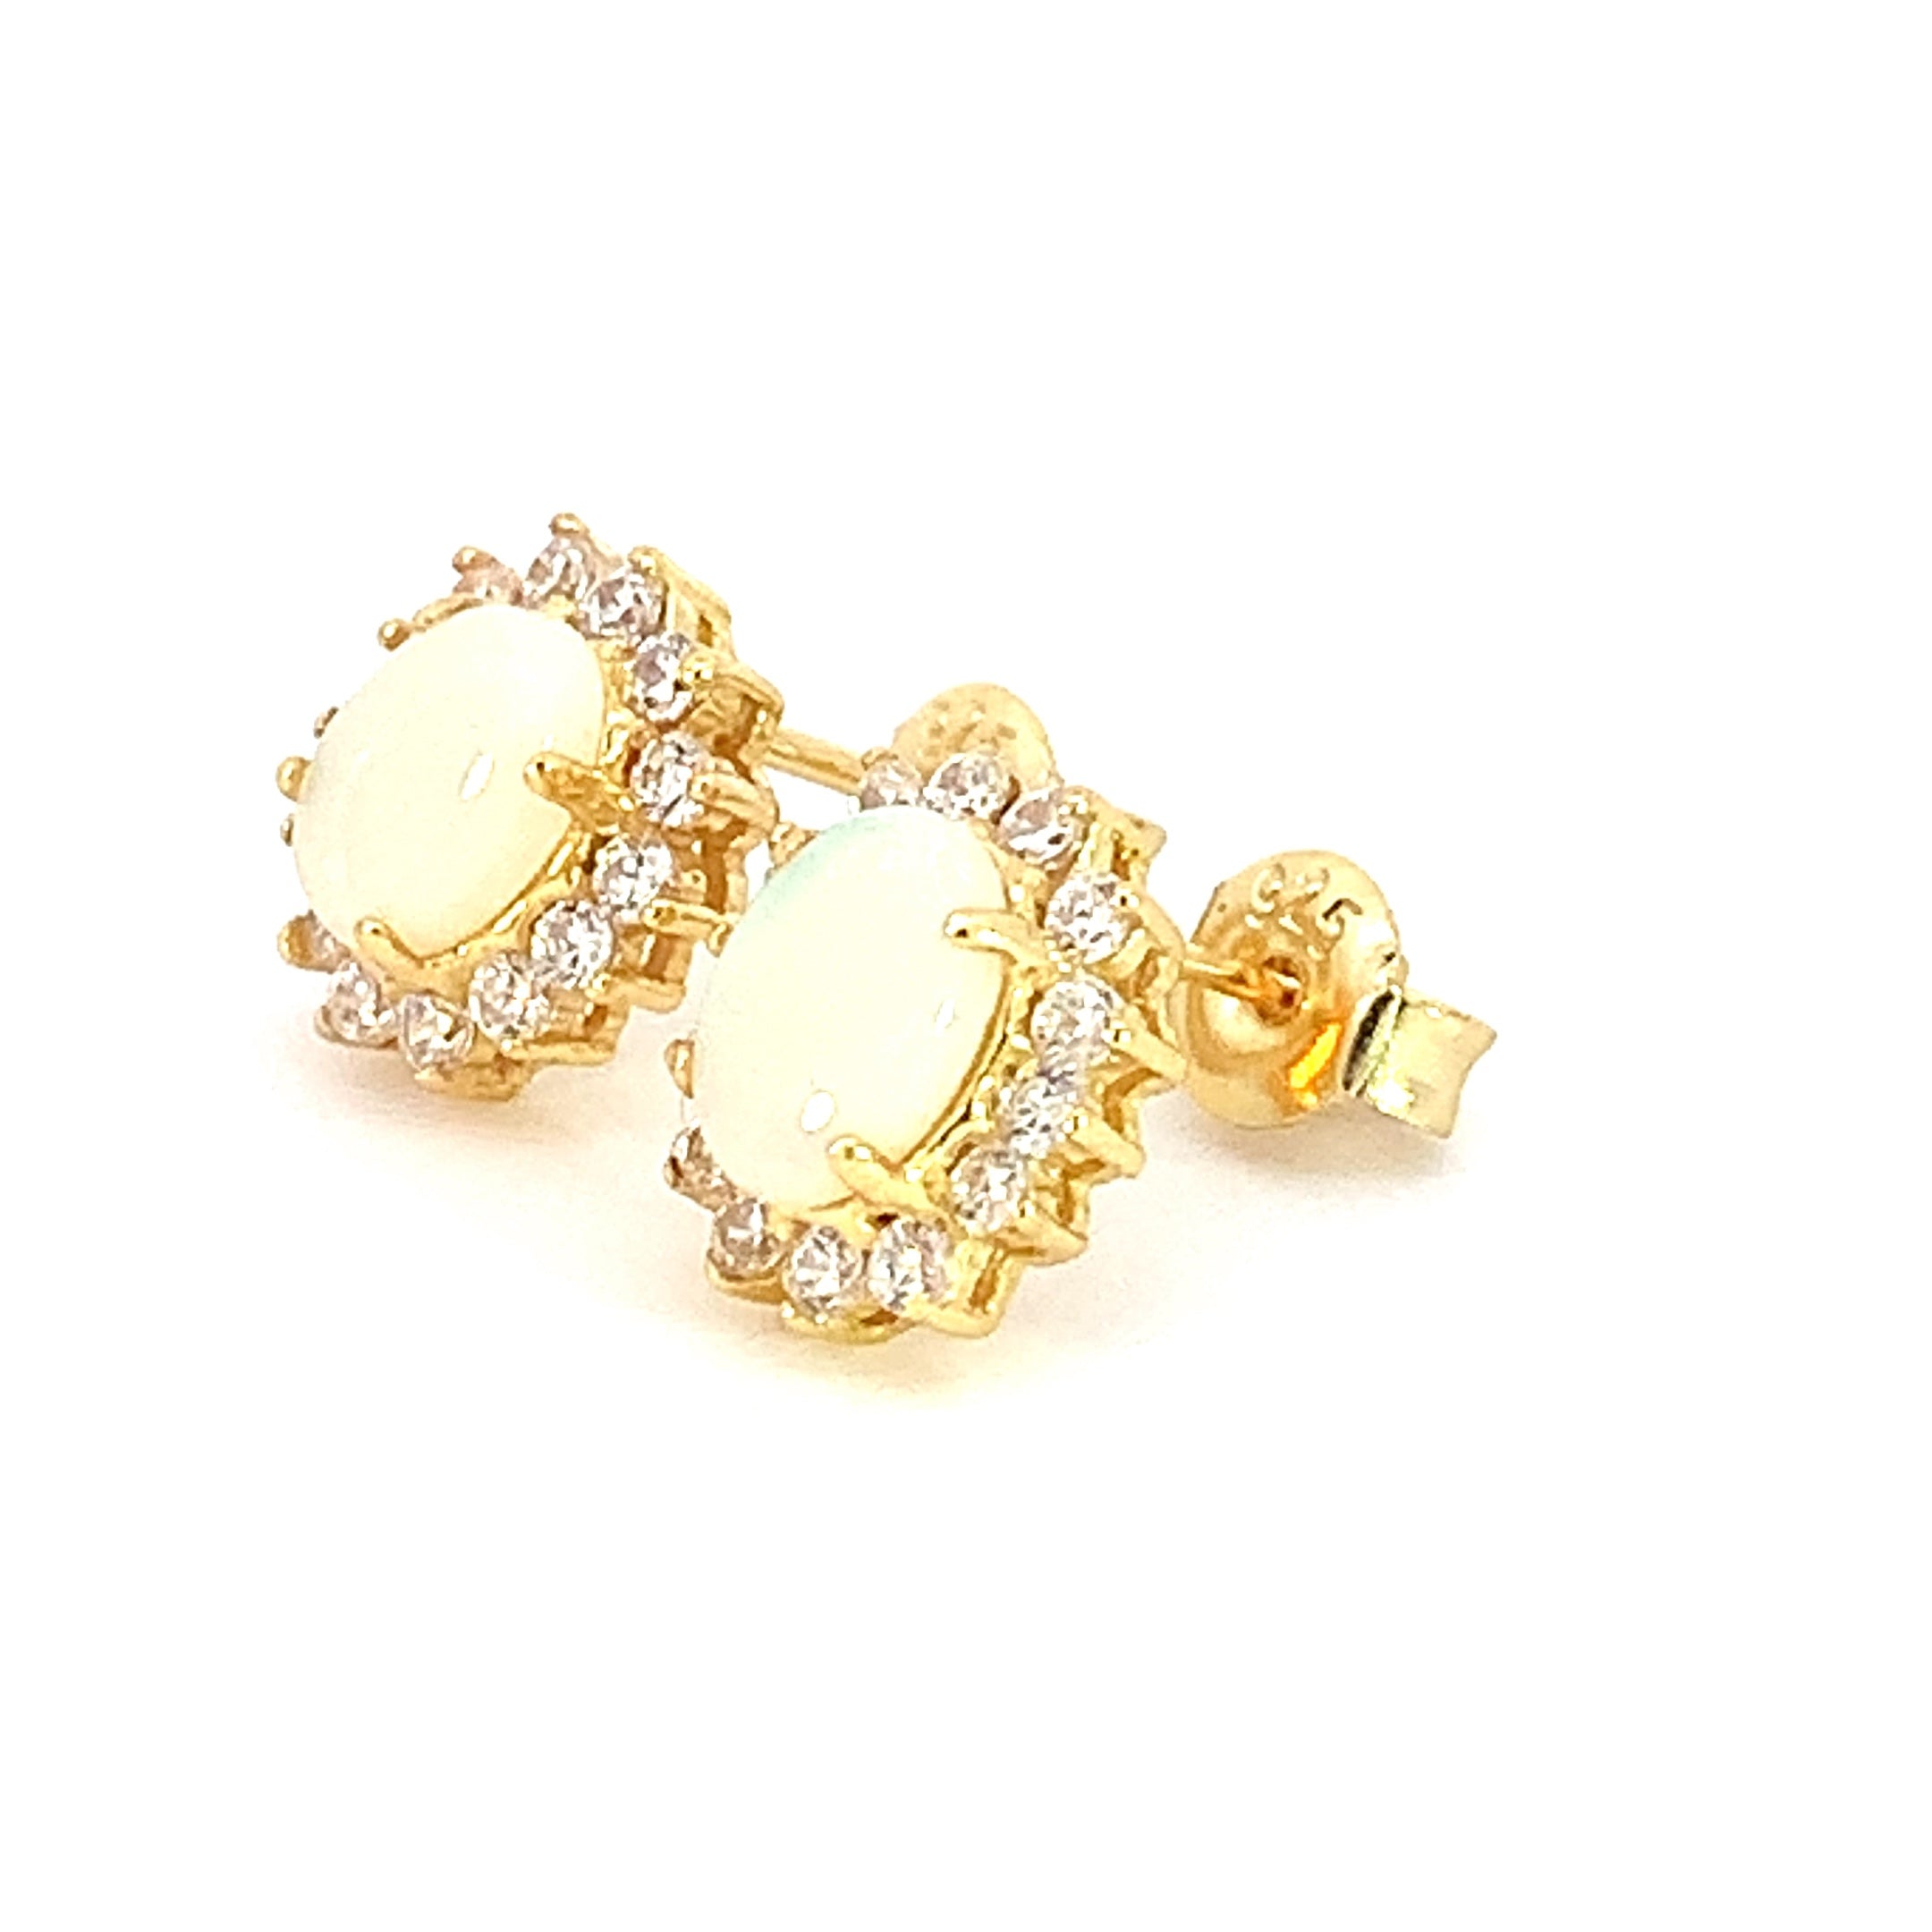 Gold Plated silver cluster 7x5mm White Opal earrings - Masterpiece Jewellery Opal & Gems Sydney Australia | Online Shop